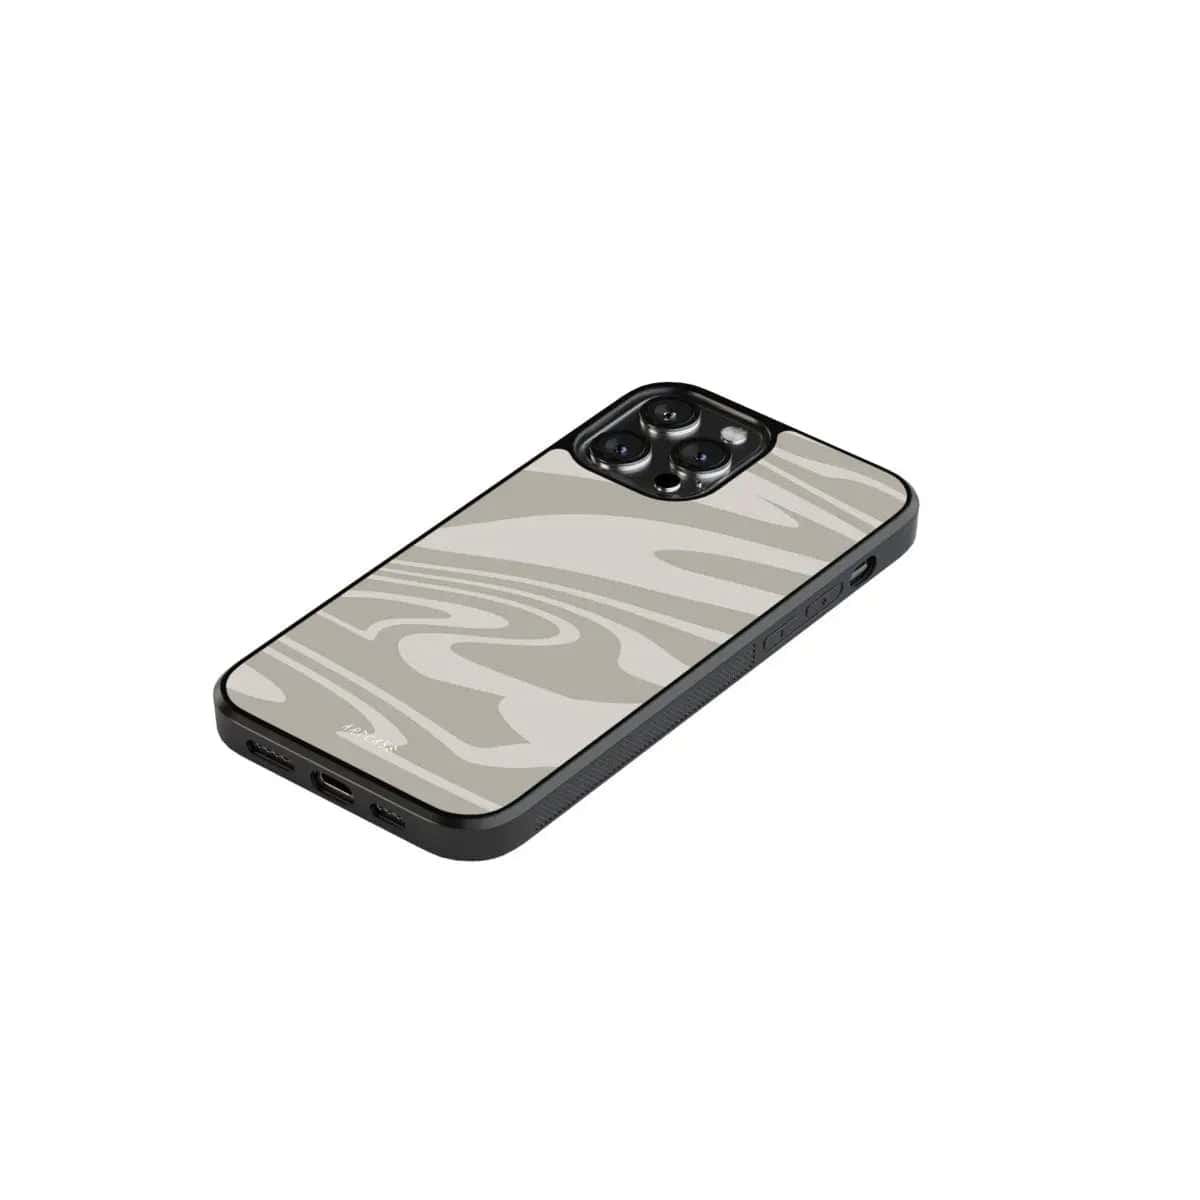 Phone case "Latte" - Artcase